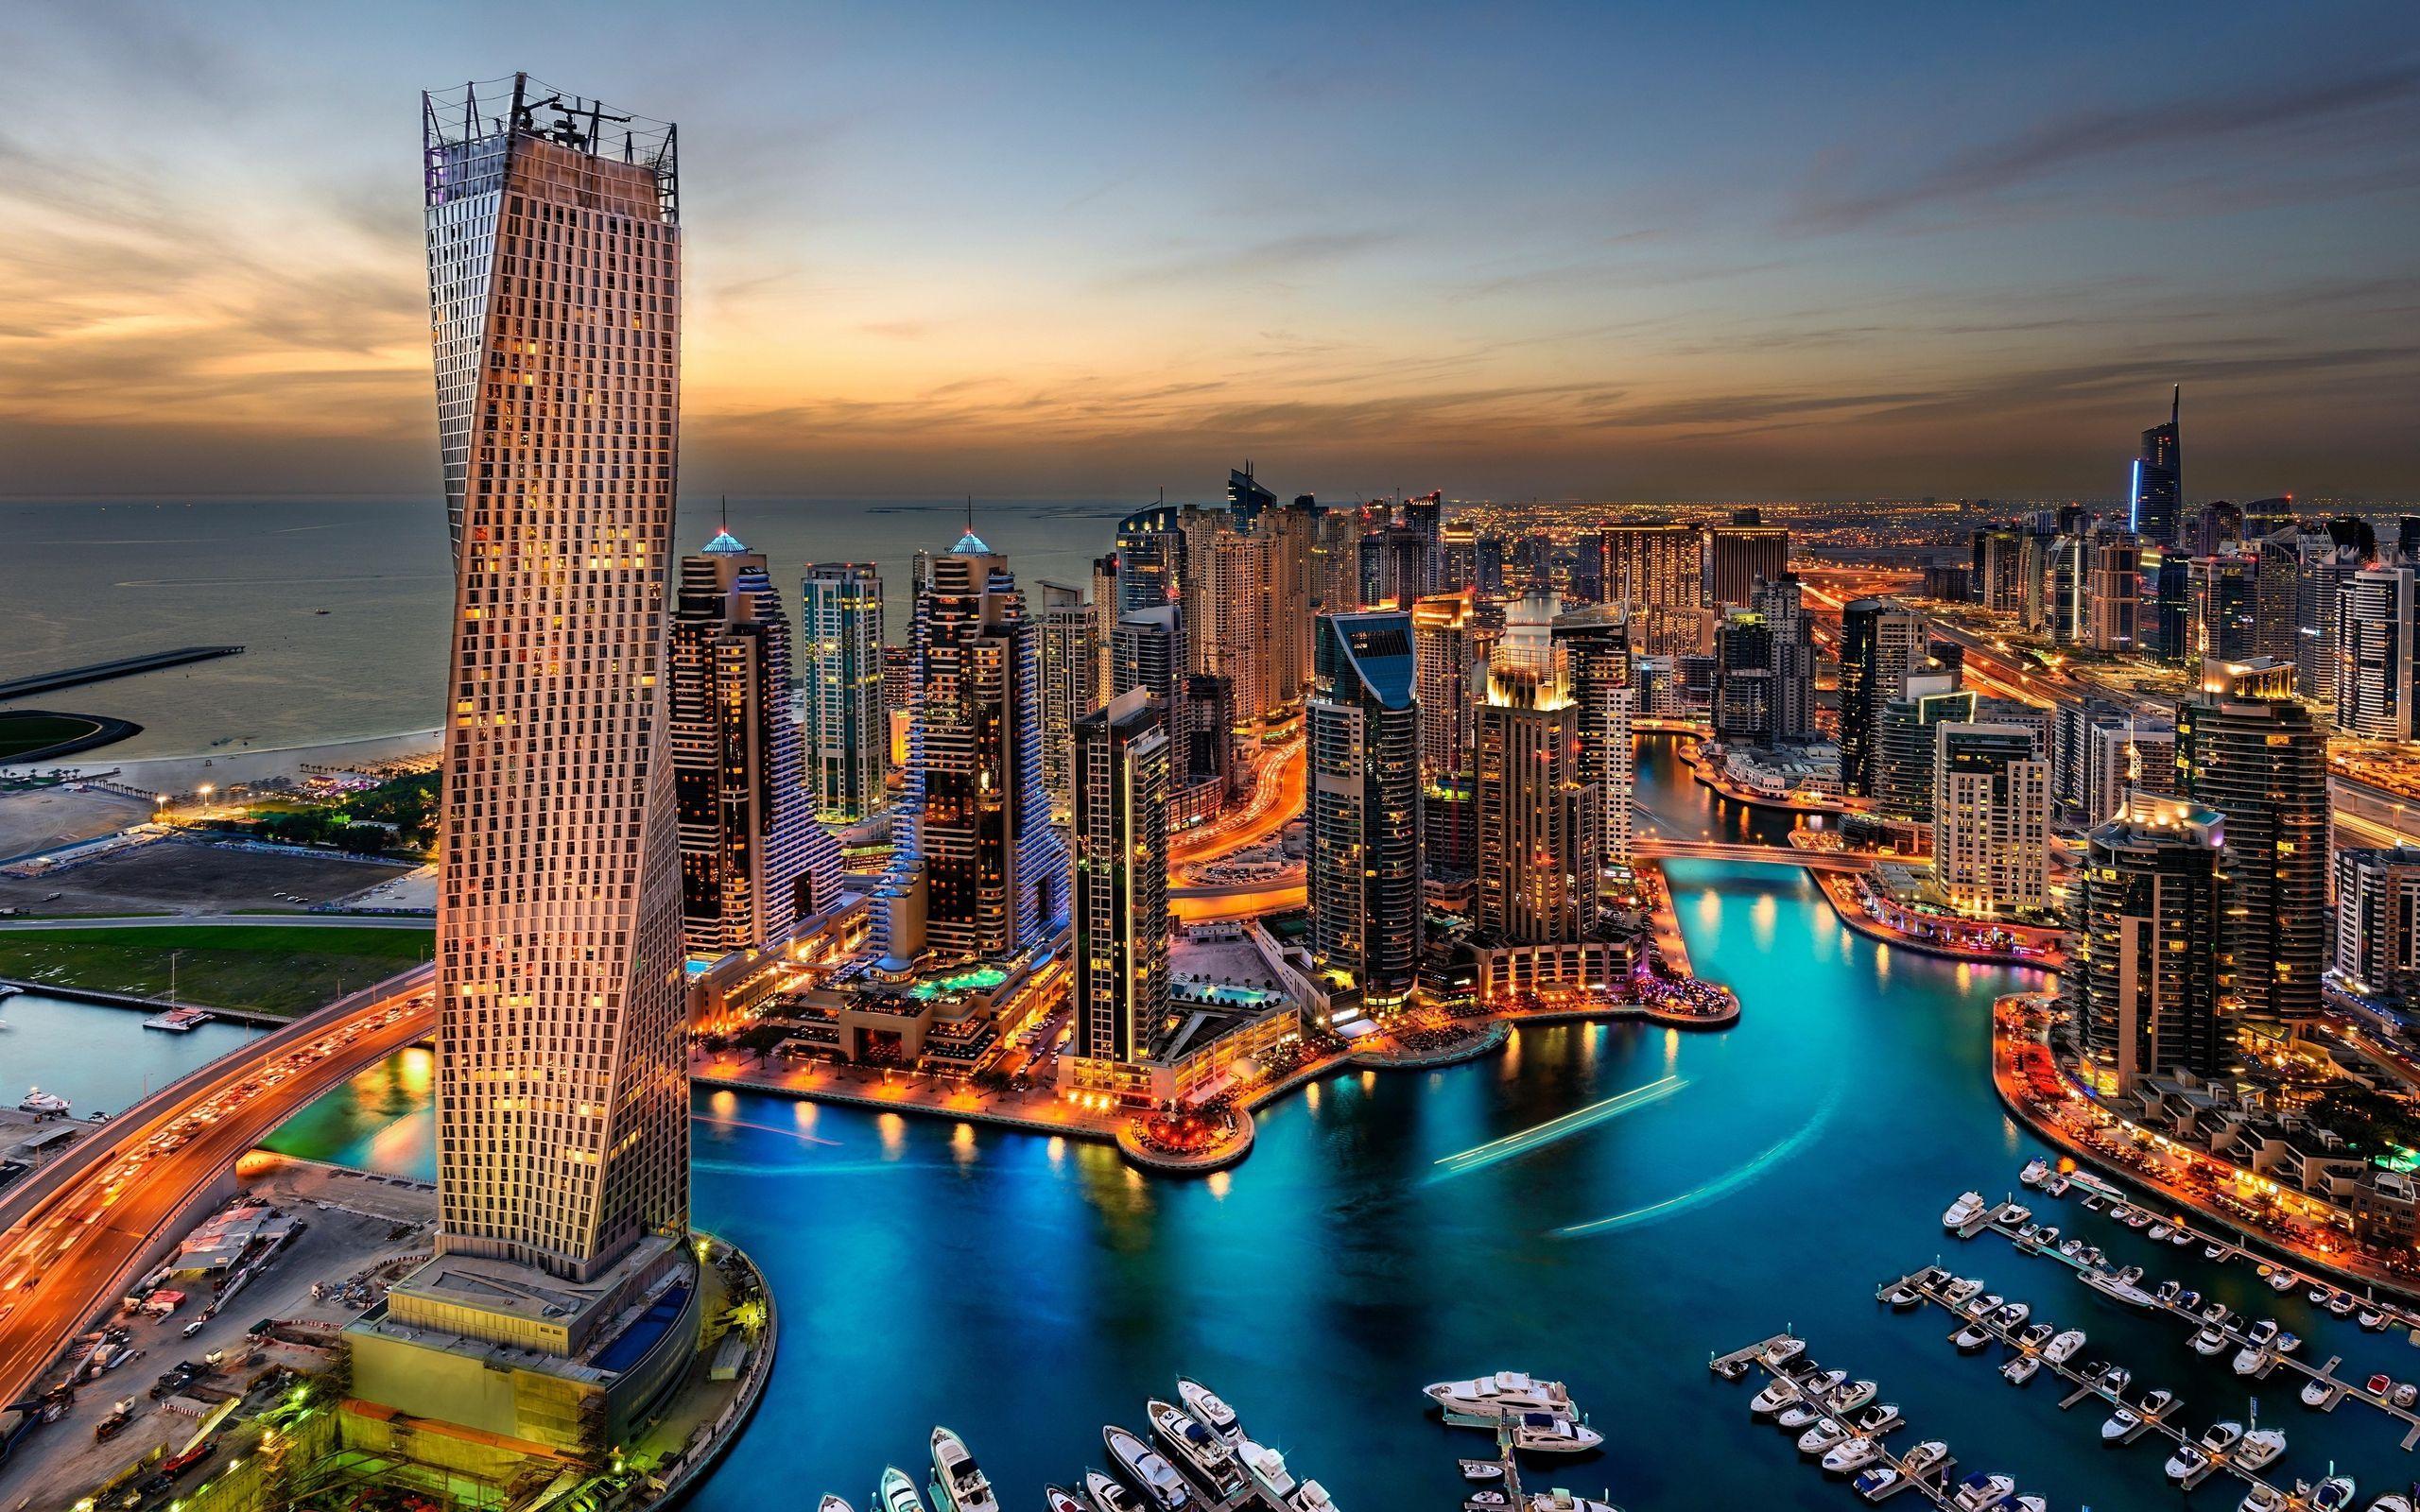 Download Dubai Wallpaper in 1600x900 Resolution